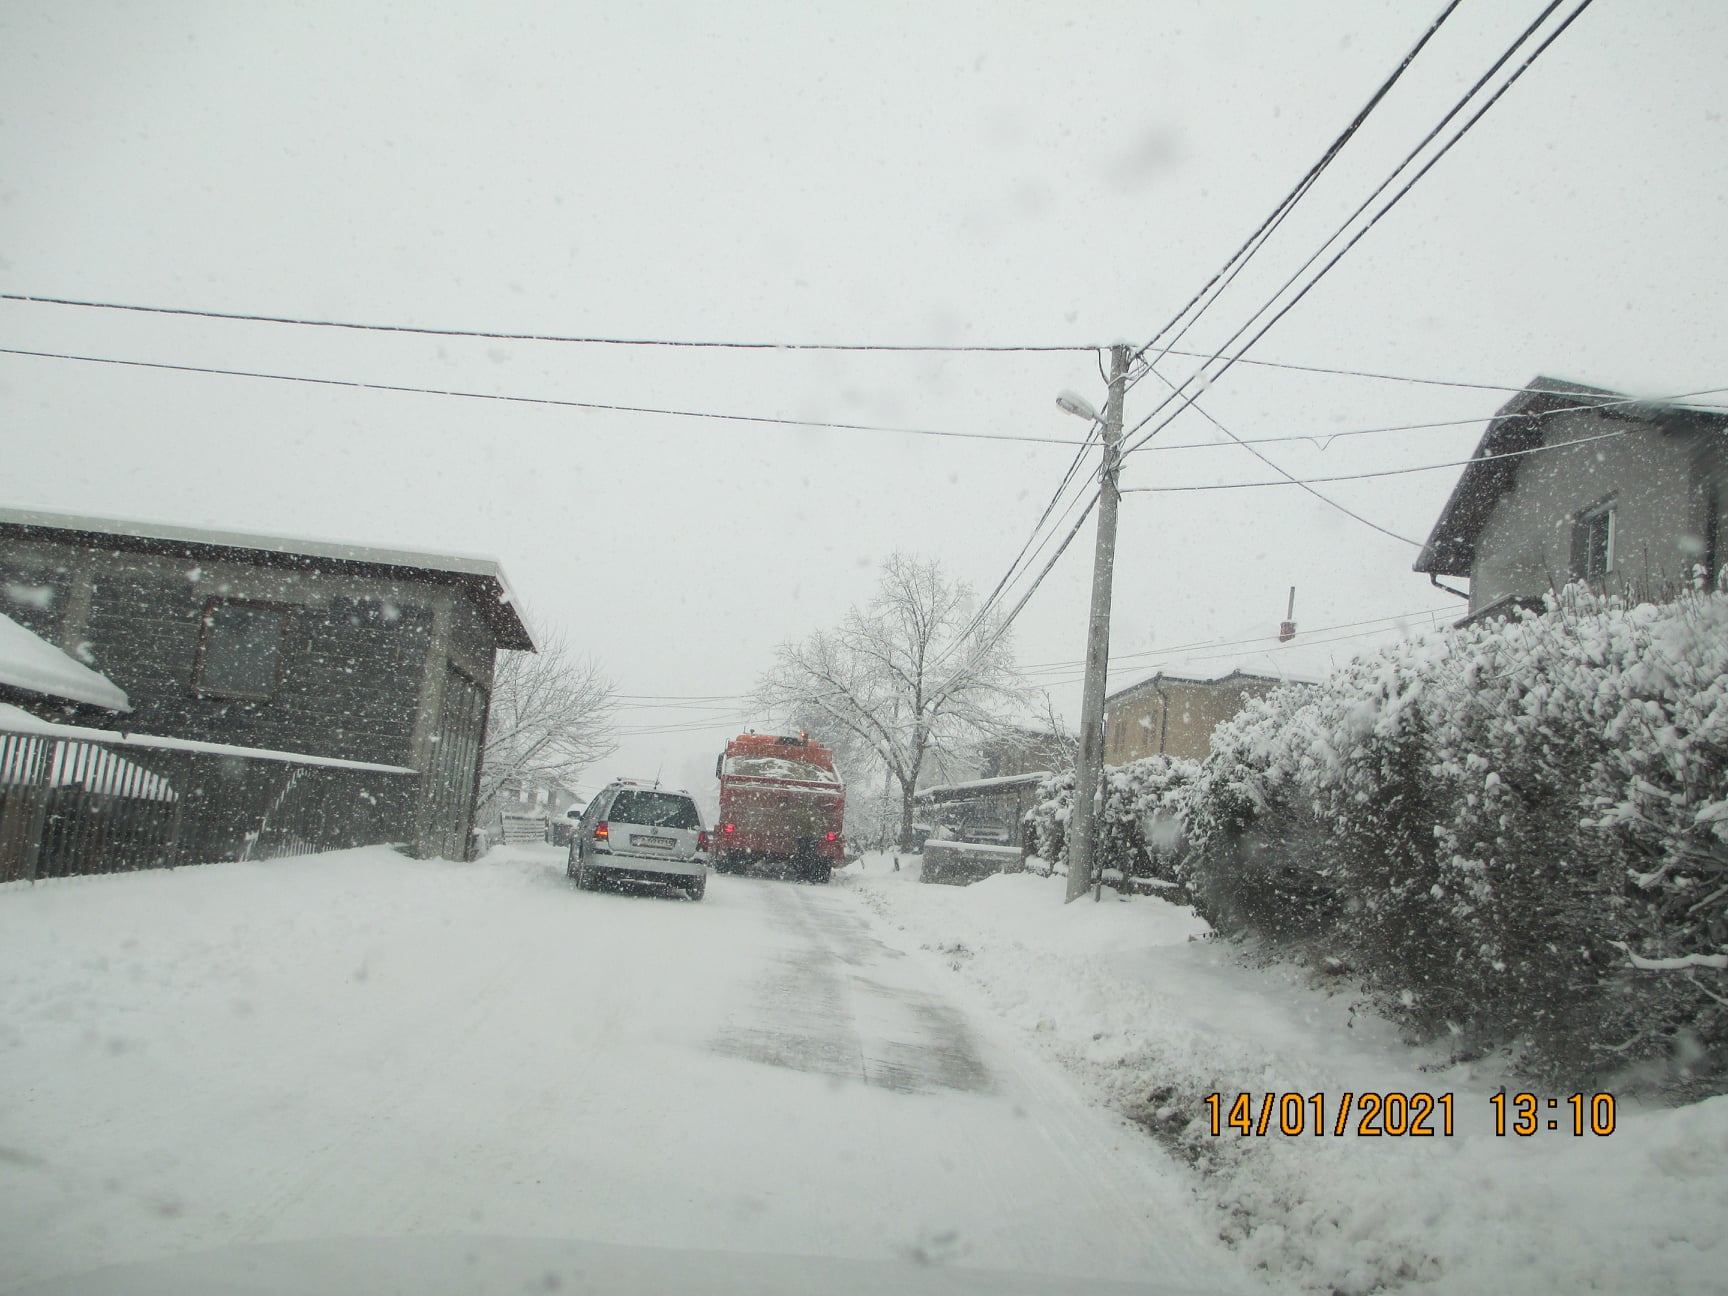 Informacija o zimskom održavanju cesta, ulica i trotoara